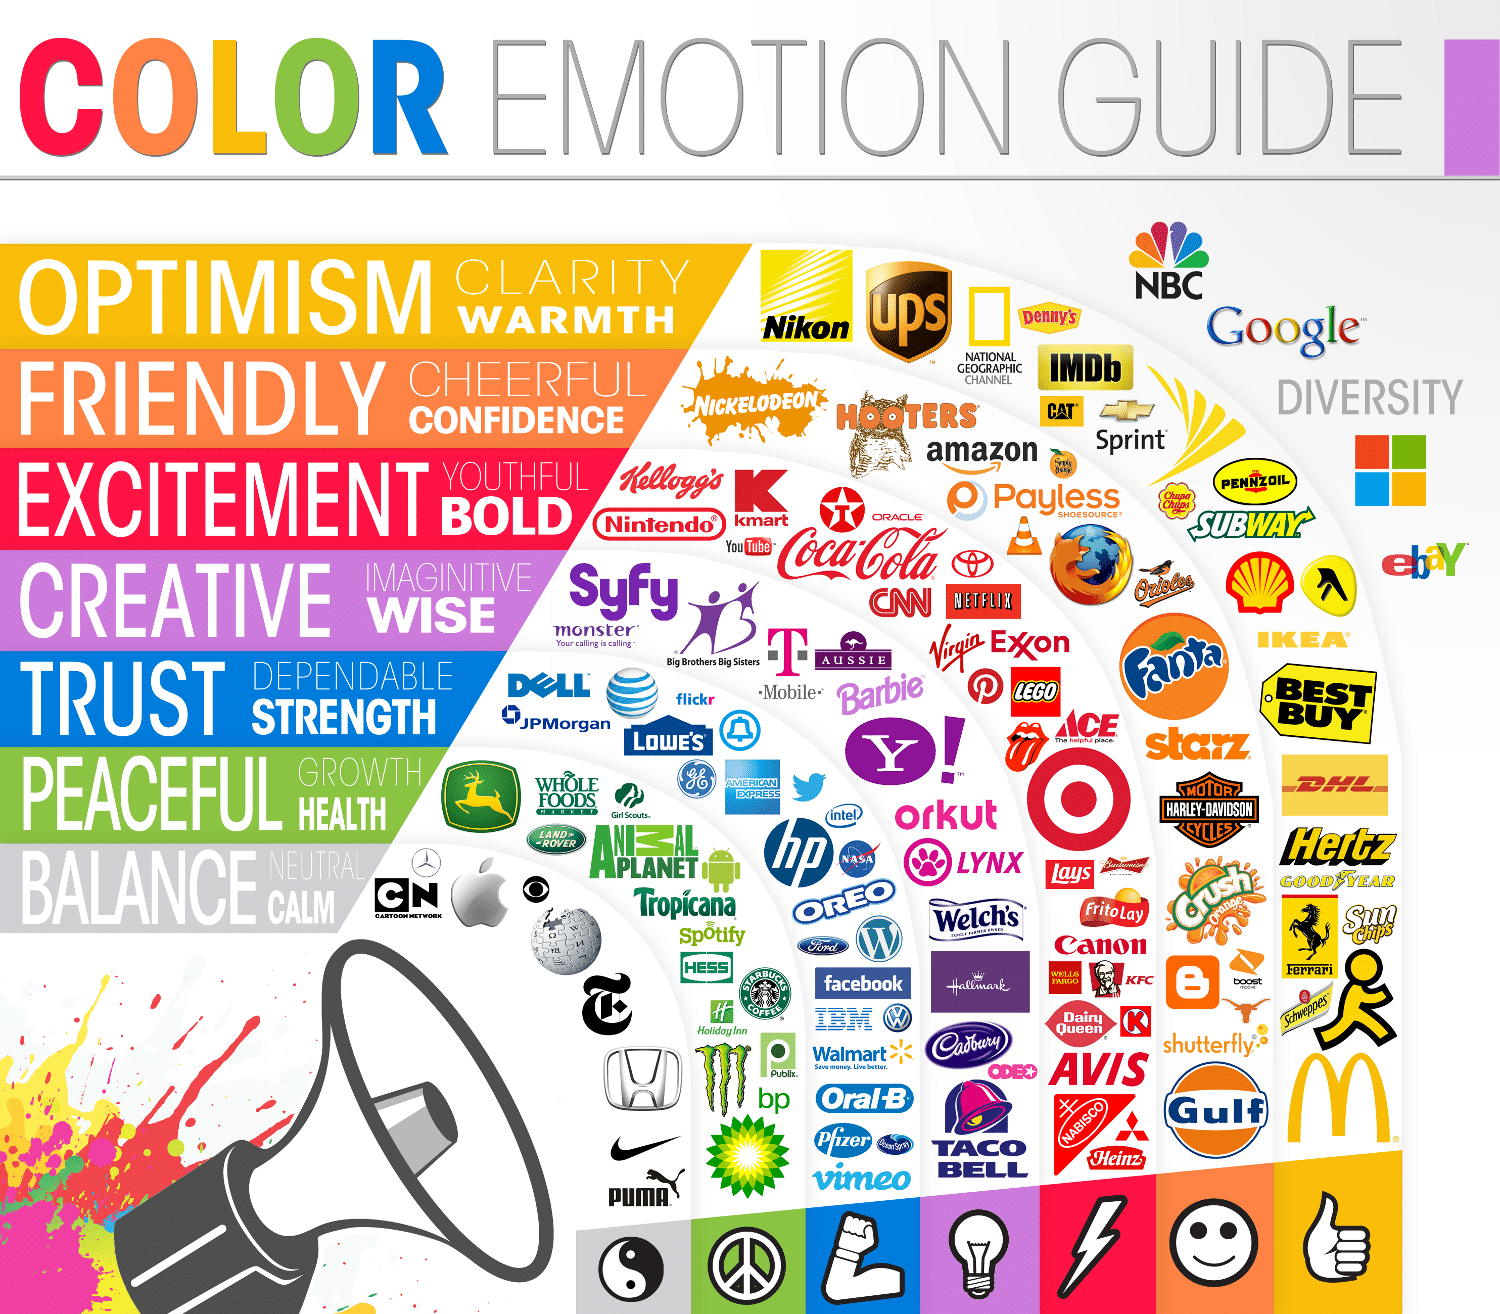 Color Emotion Guide - Psychology of Blog Design